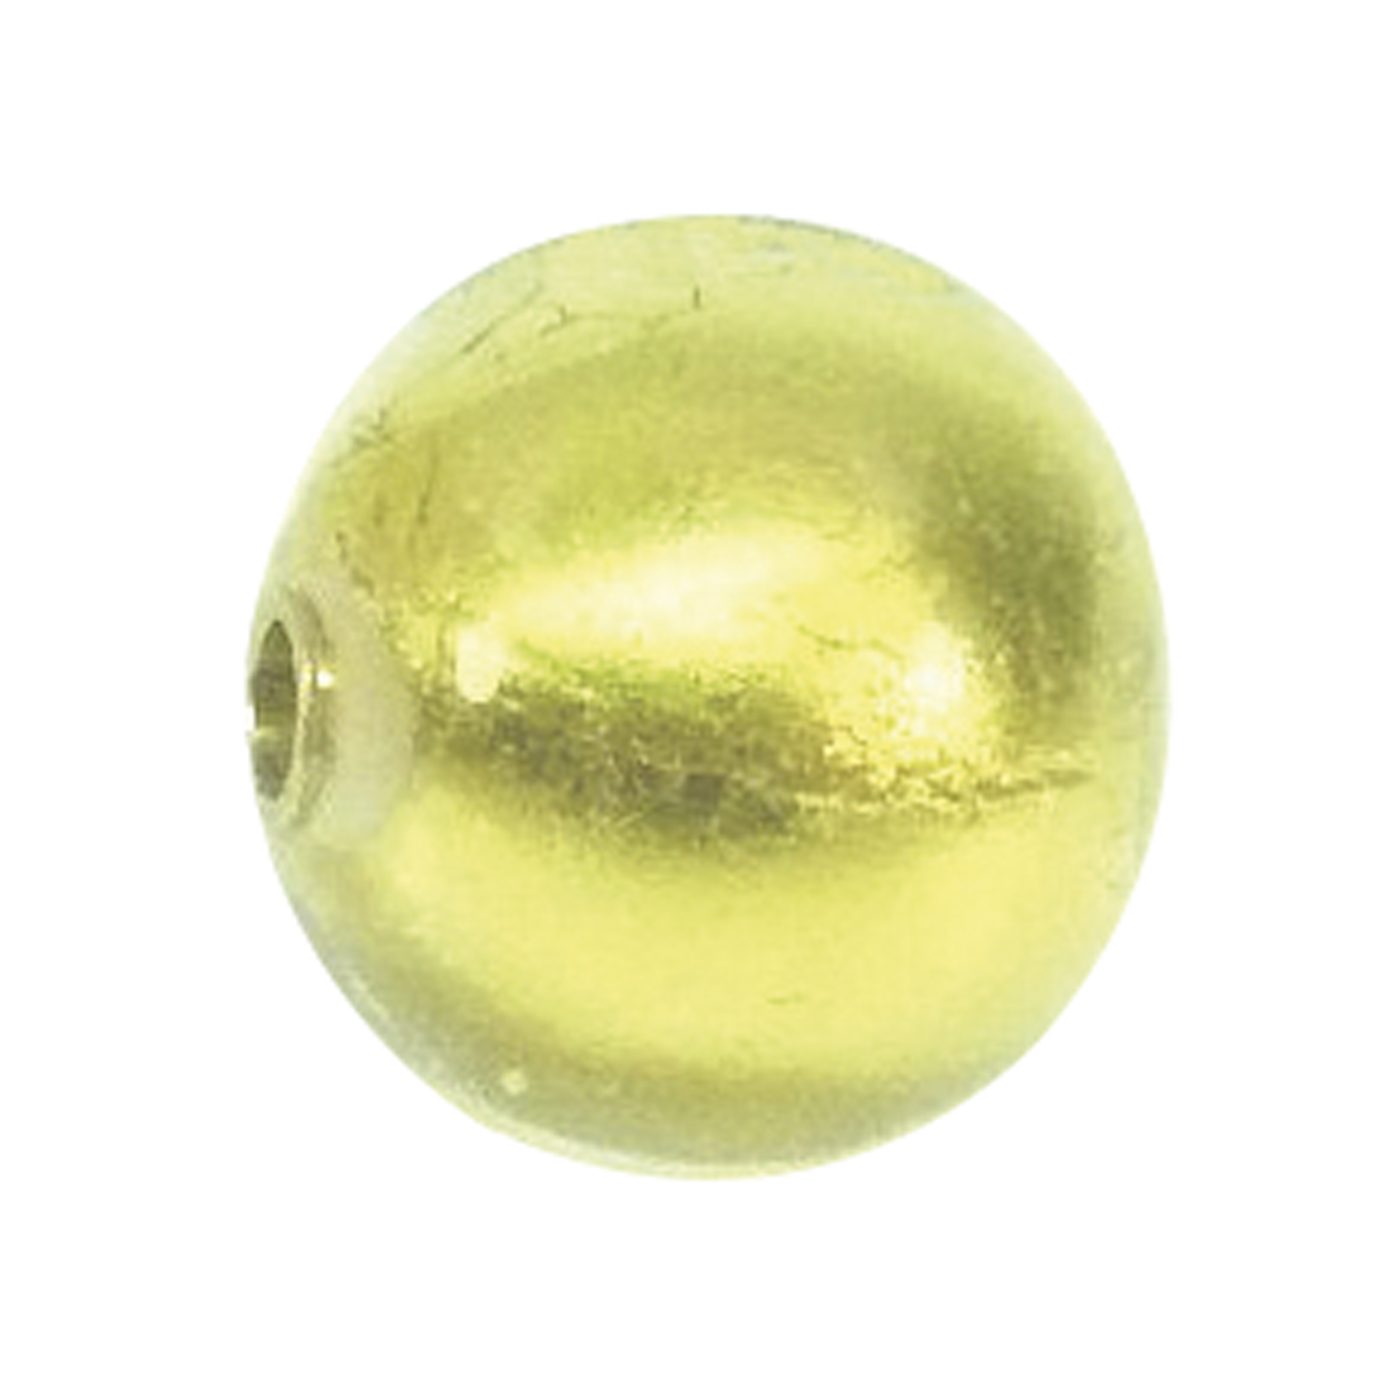 Wechselschließe, Muranoglas, Kugel, gold, ø 20 mm - 1 Stück